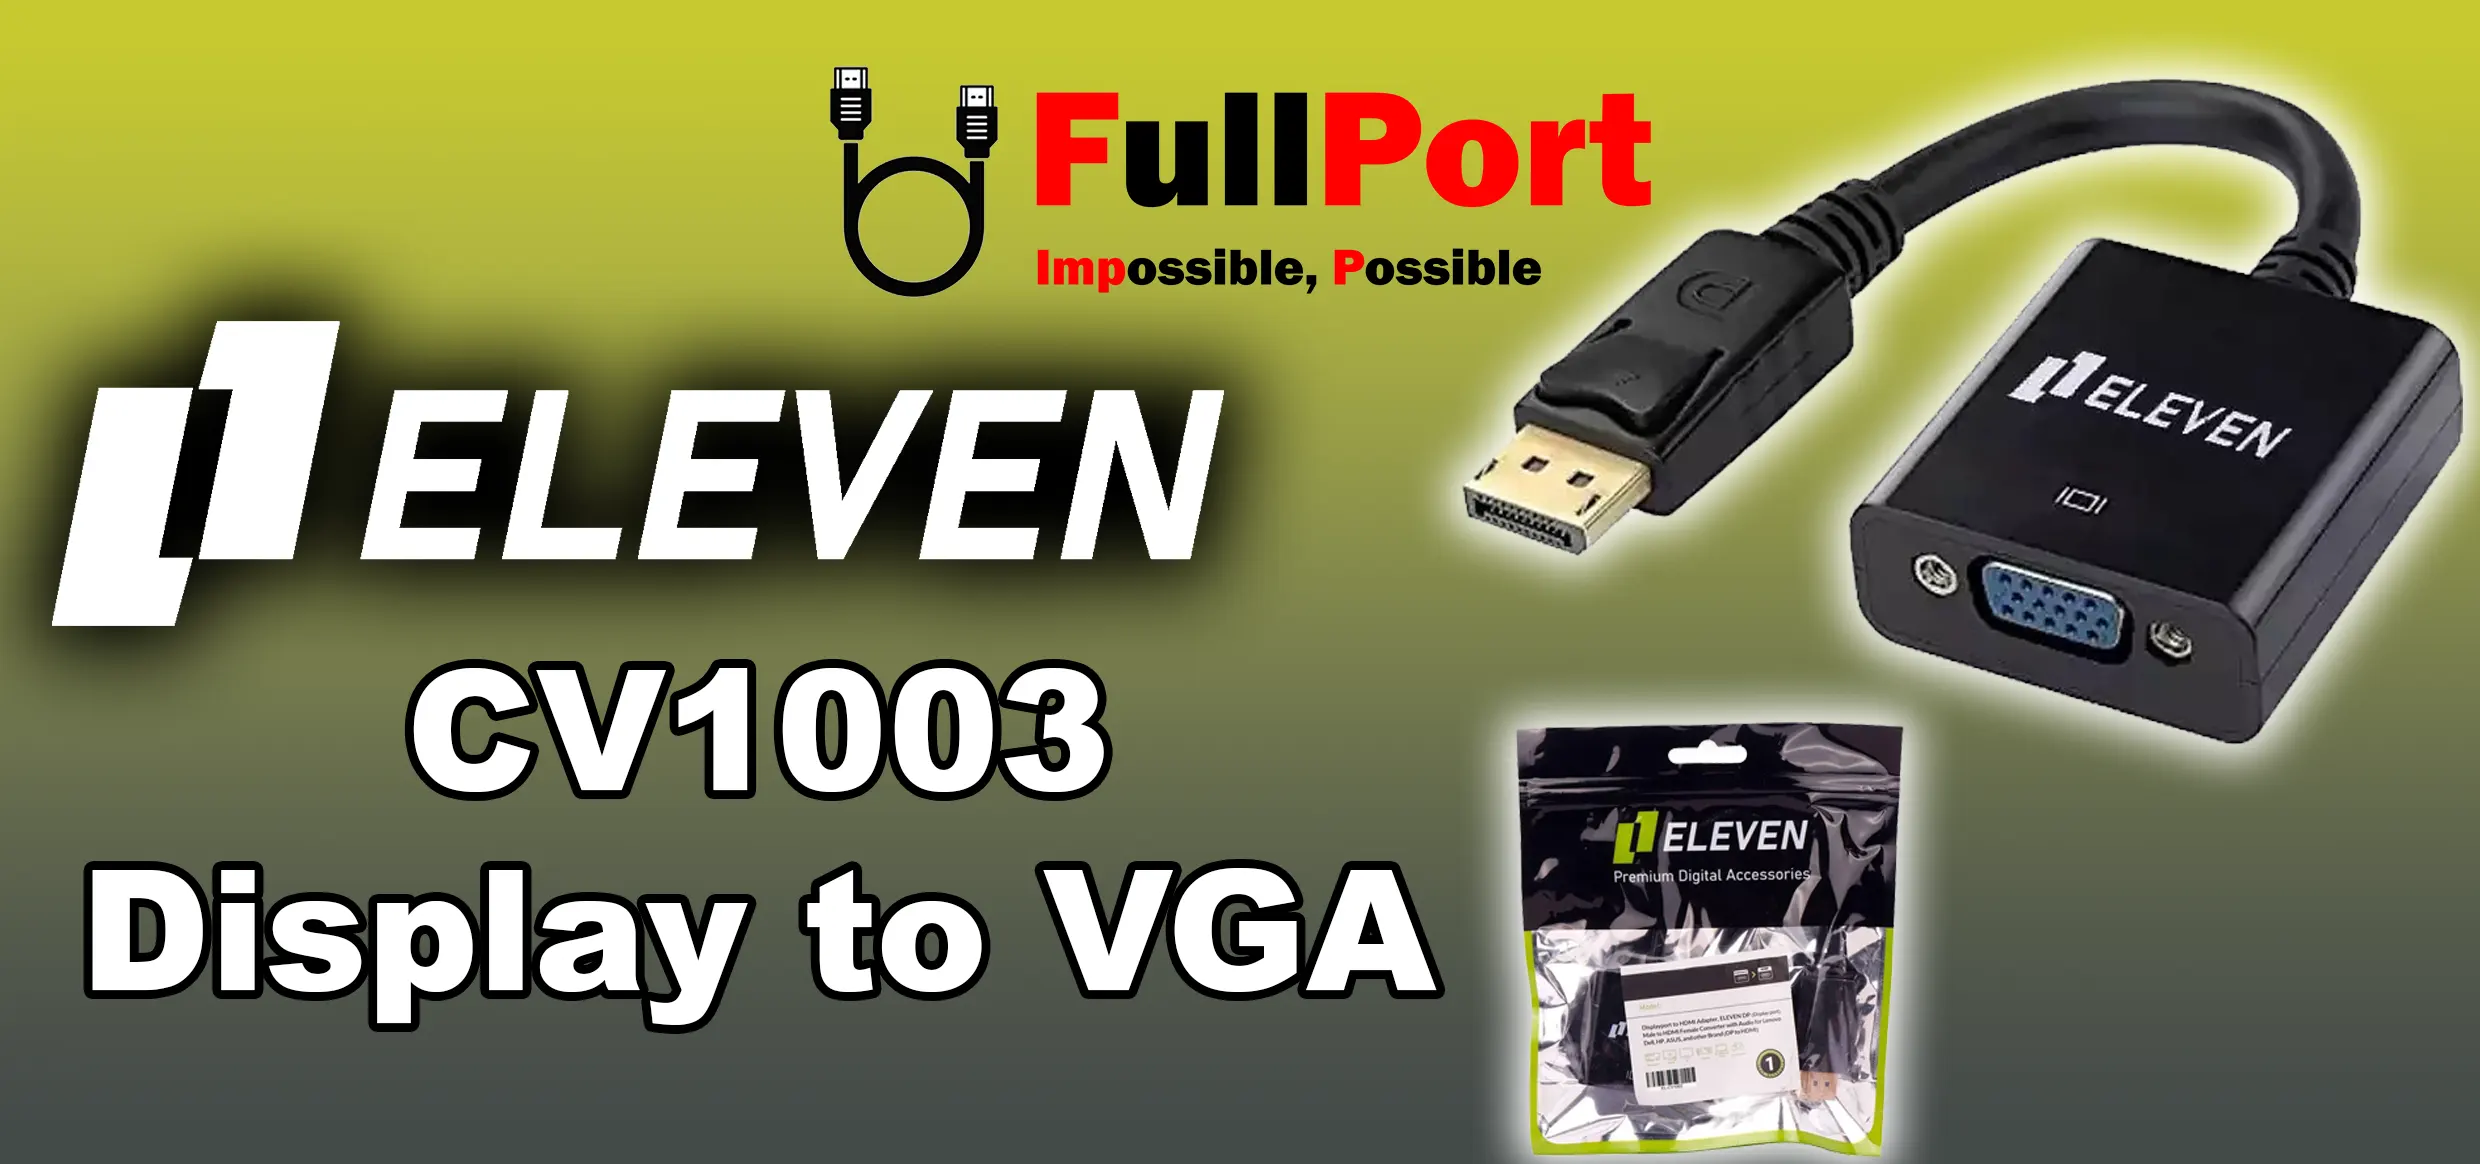 مشاهده و خرید اینترنتی مبدل Display به VGA ایلون | ELEVEN مدل CV1003 با گارانتی ایلون 1 سال از فروشگاه اینترنتی فول پورت زیر قیمت بازار